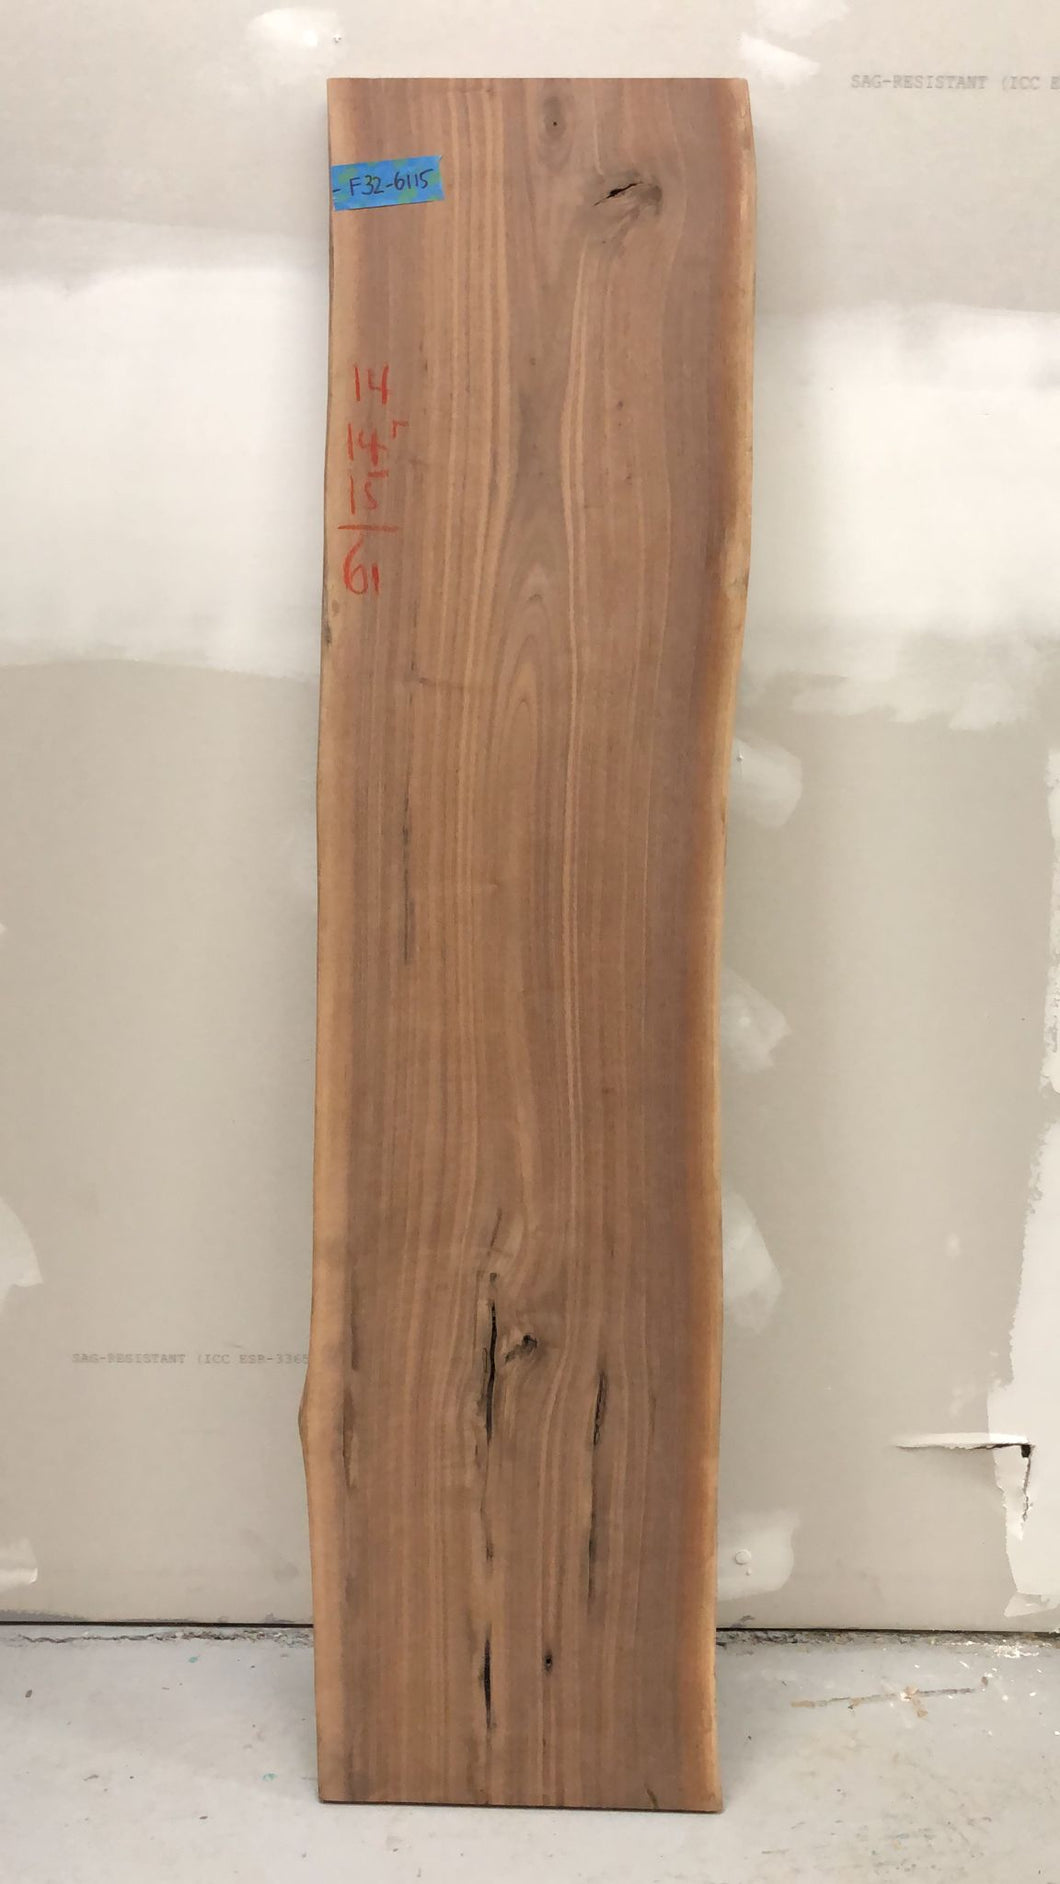 F32-6115 Live edge walnut wood 61